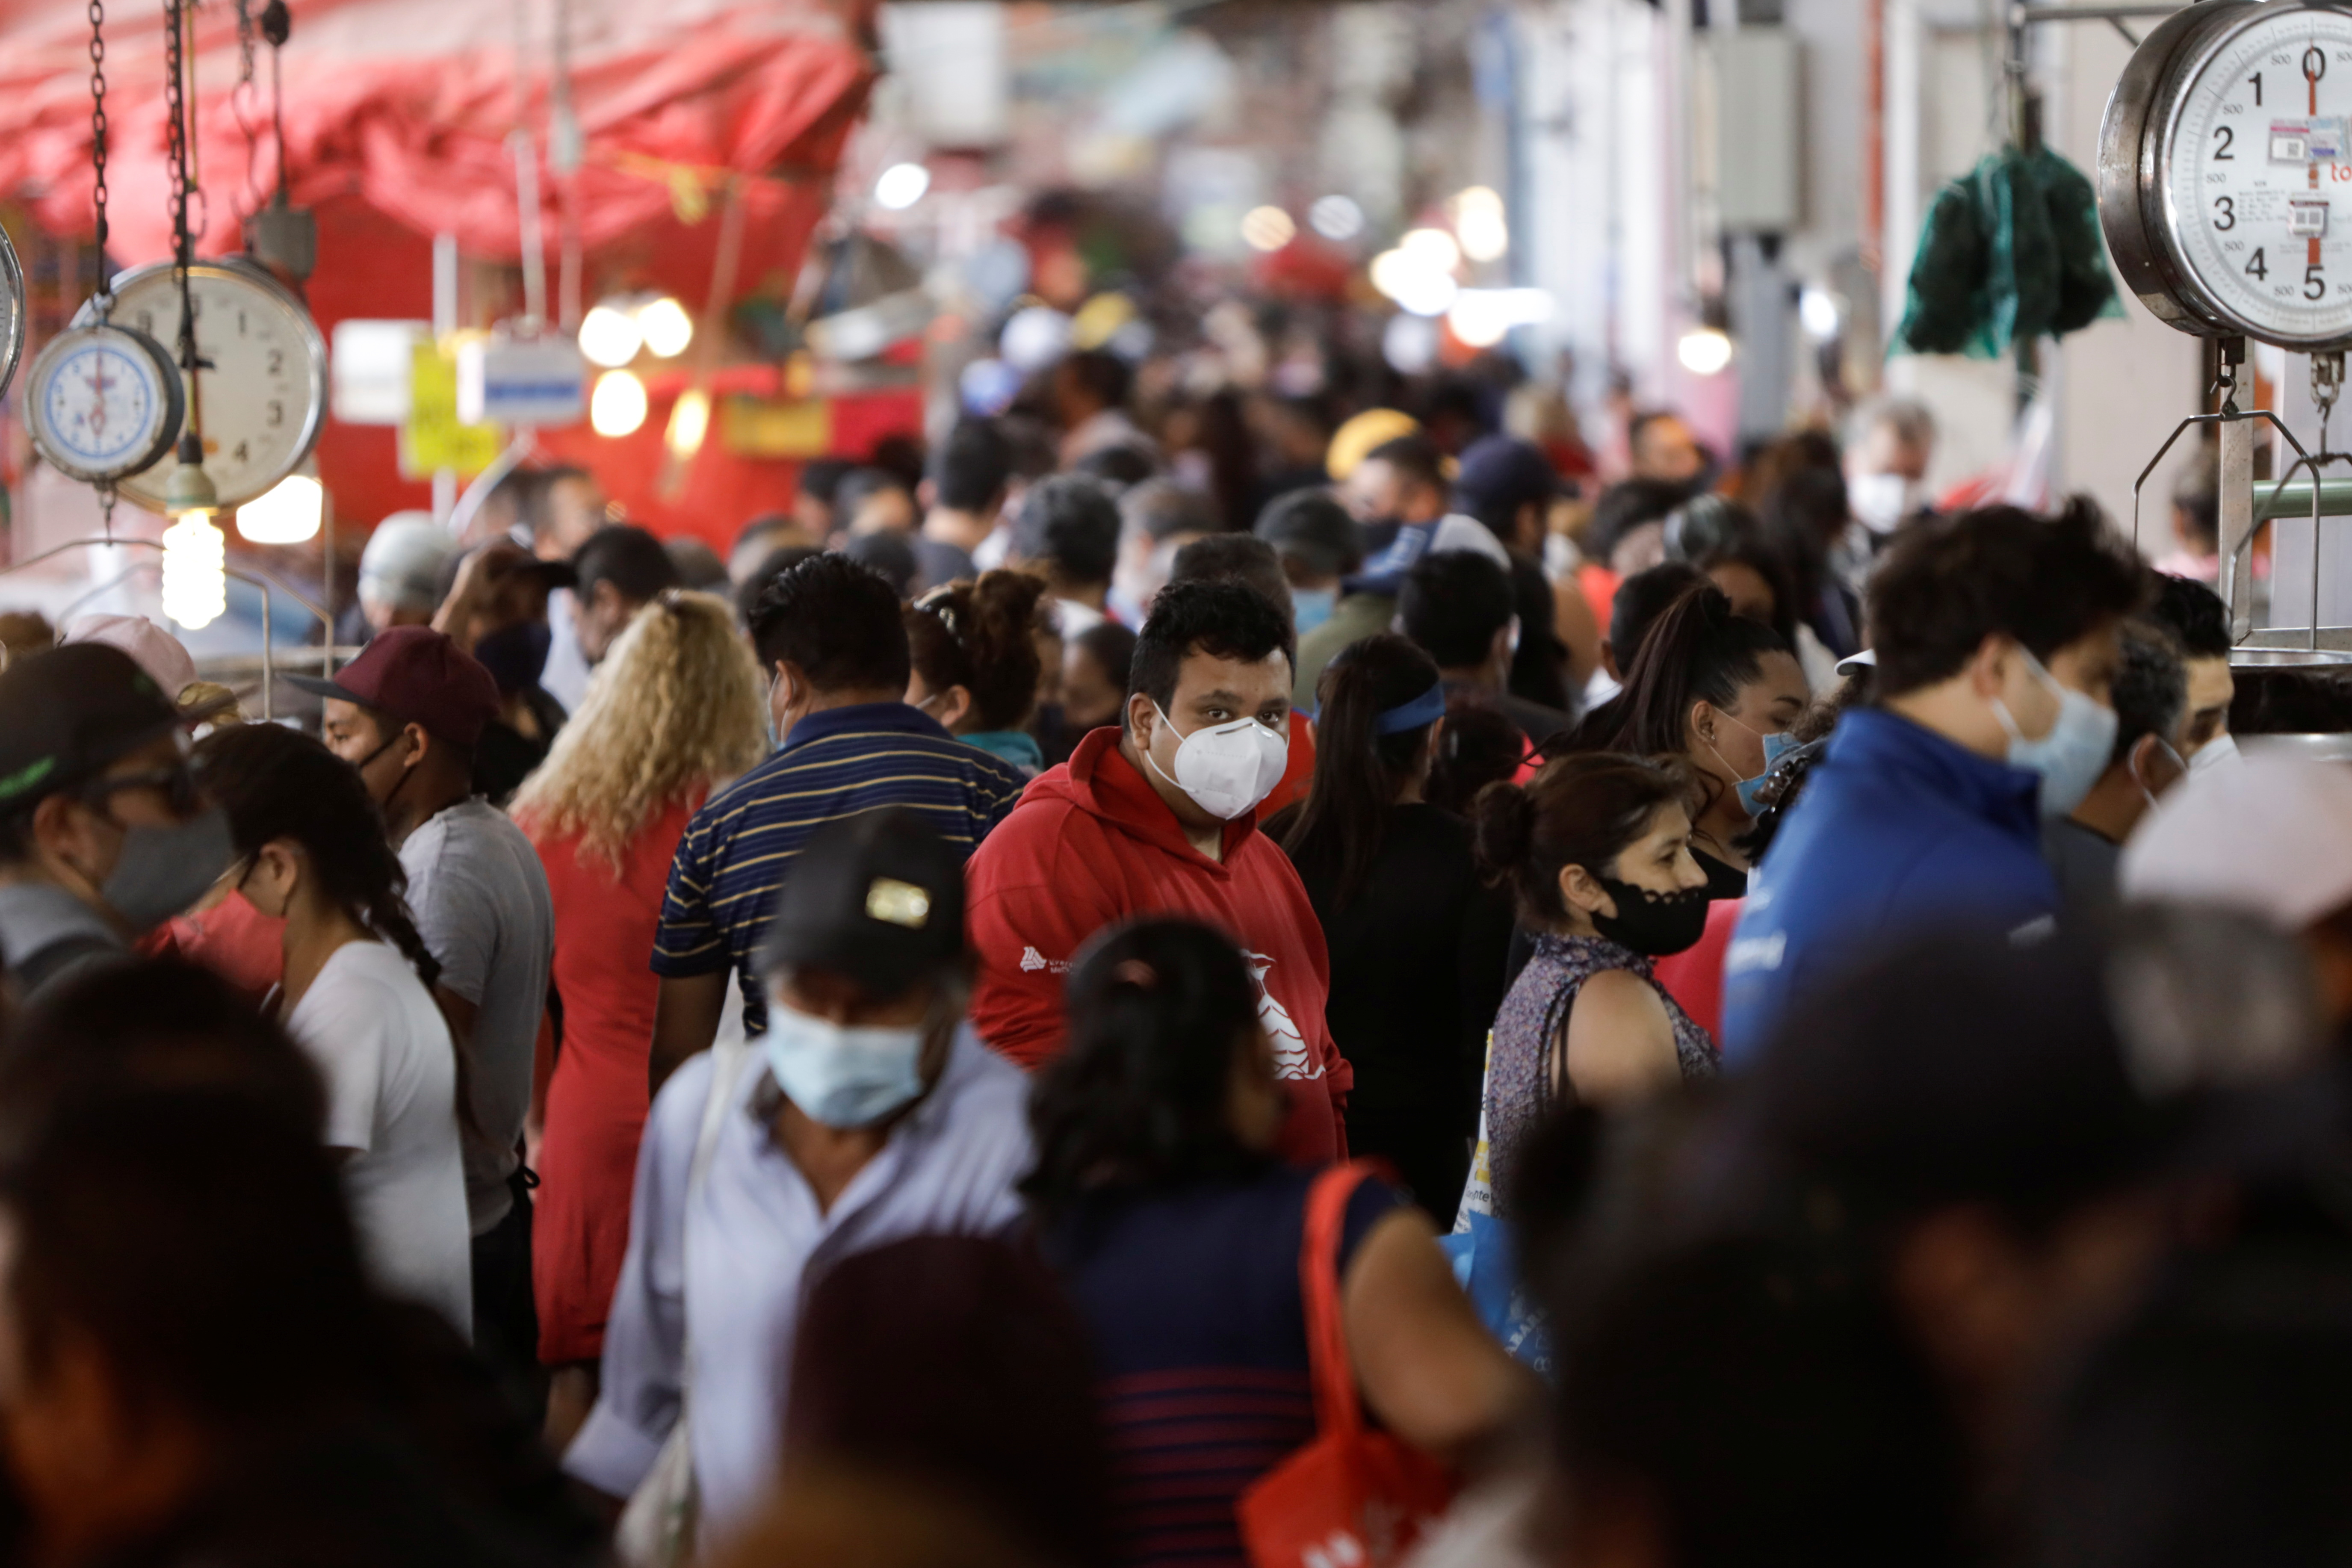 “Está bajando el contagio”: AMLO ve alentador descenso de la pandemia en México